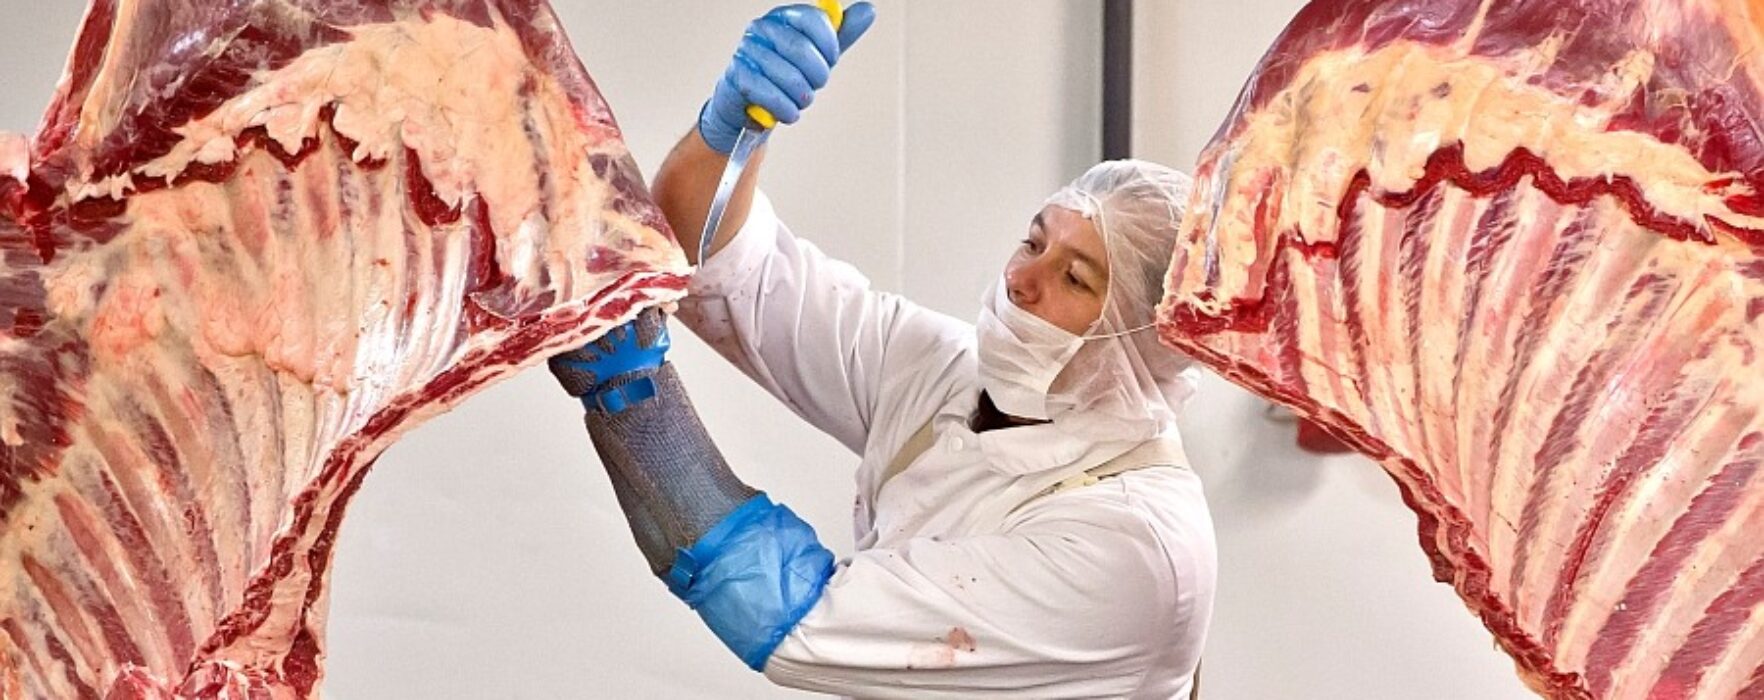 Se caută tranşatori carne în Irlanda, salariu 8 euro/oră